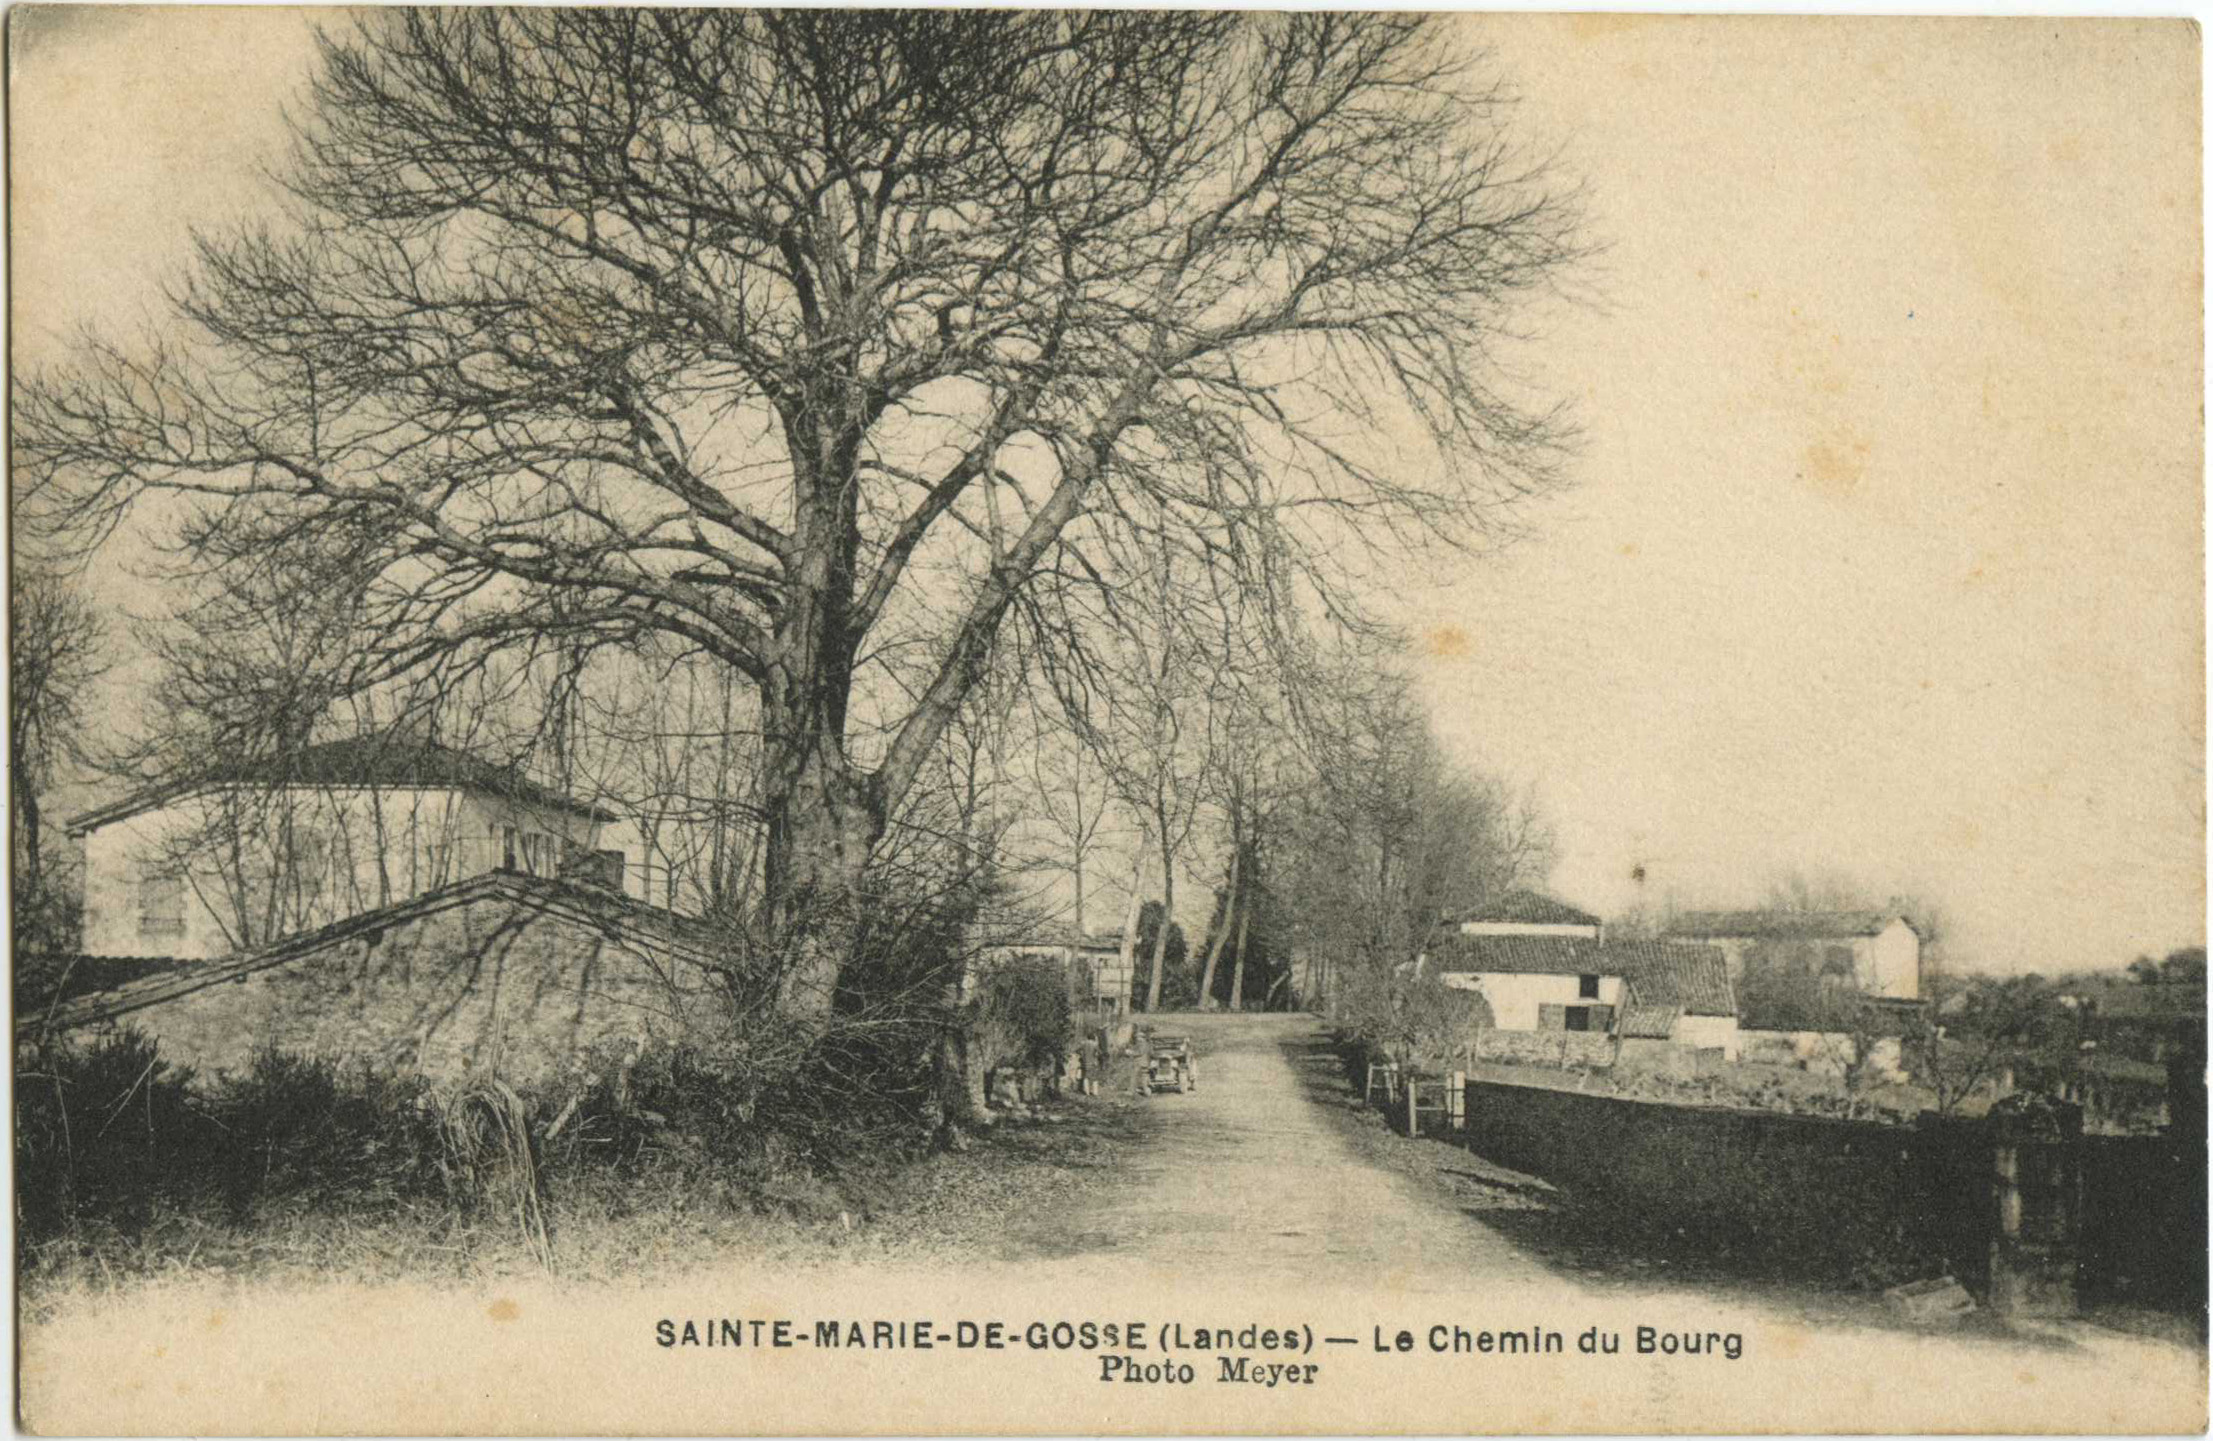 Sainte-Marie-de-Gosse - Le Chemin du Bourg